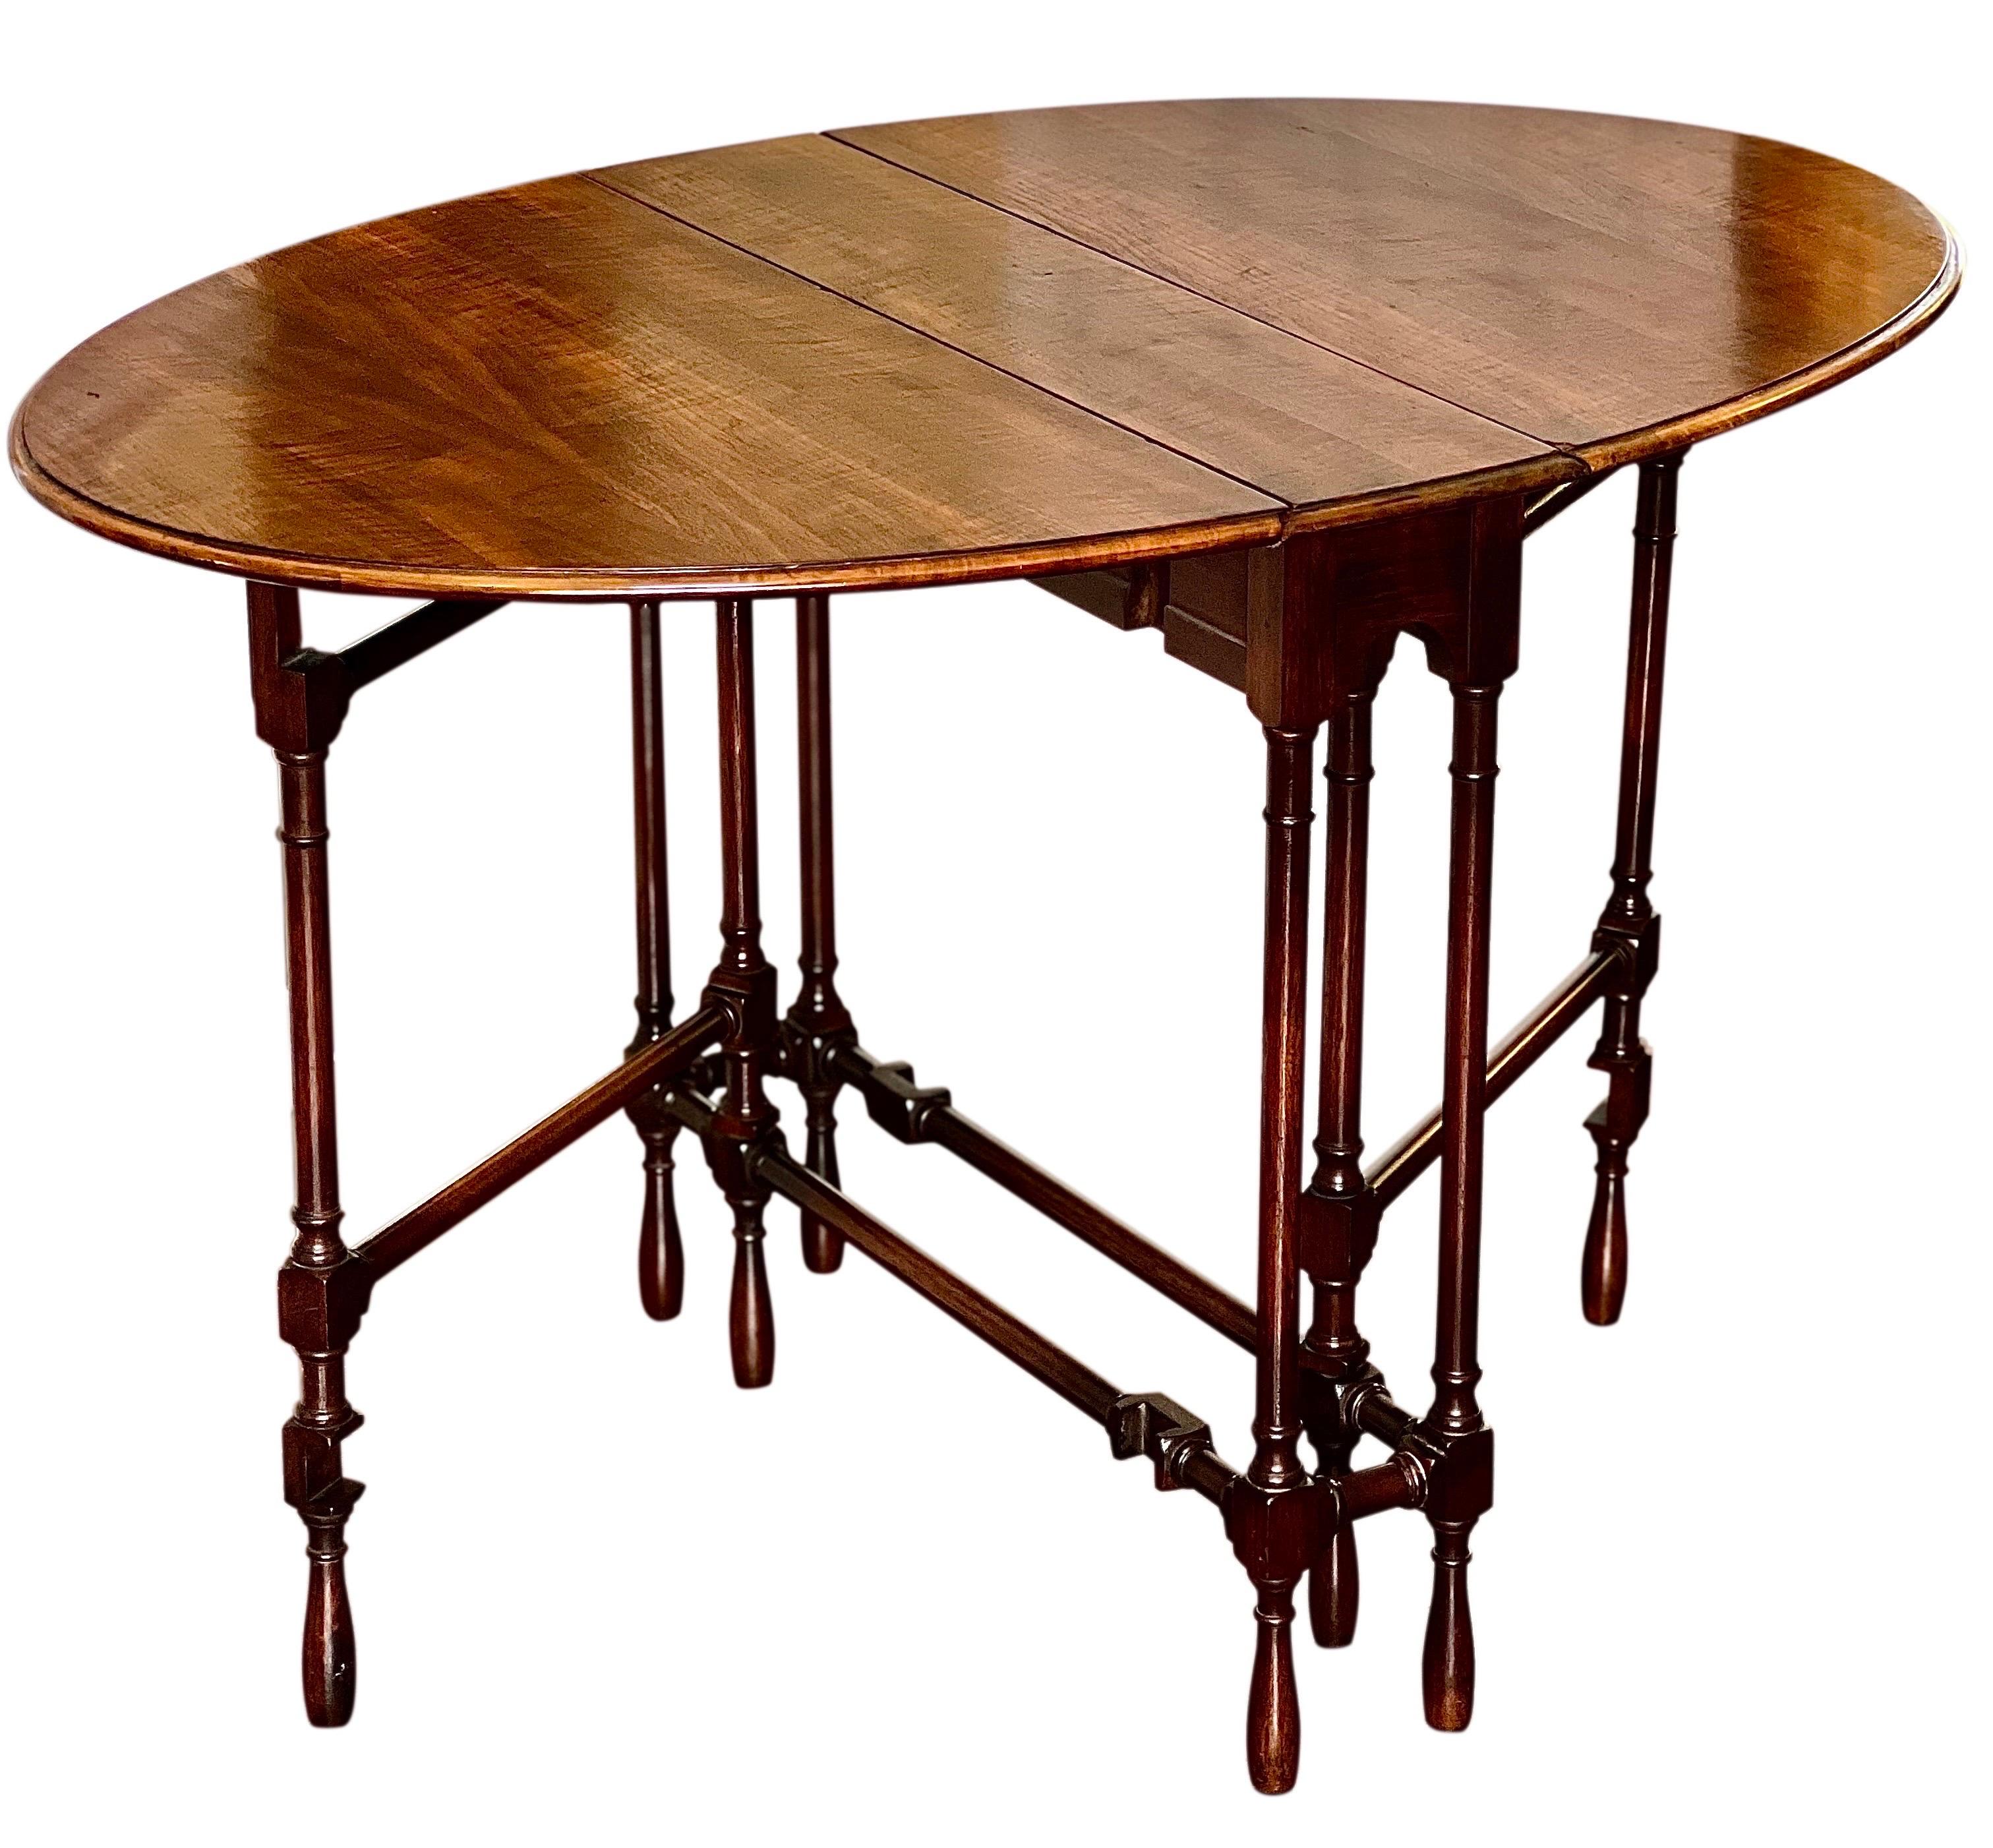 Antiker englischer Tortentisch aus Eiche, um 1910.

Außergewöhnlicher Tisch im jakobinischen Stil aus Tigereiche mit einem einzigartig schlanken Profil. Er verfügt über besonders lange Blätter, die sich ausfahren lassen, um eine großzügige